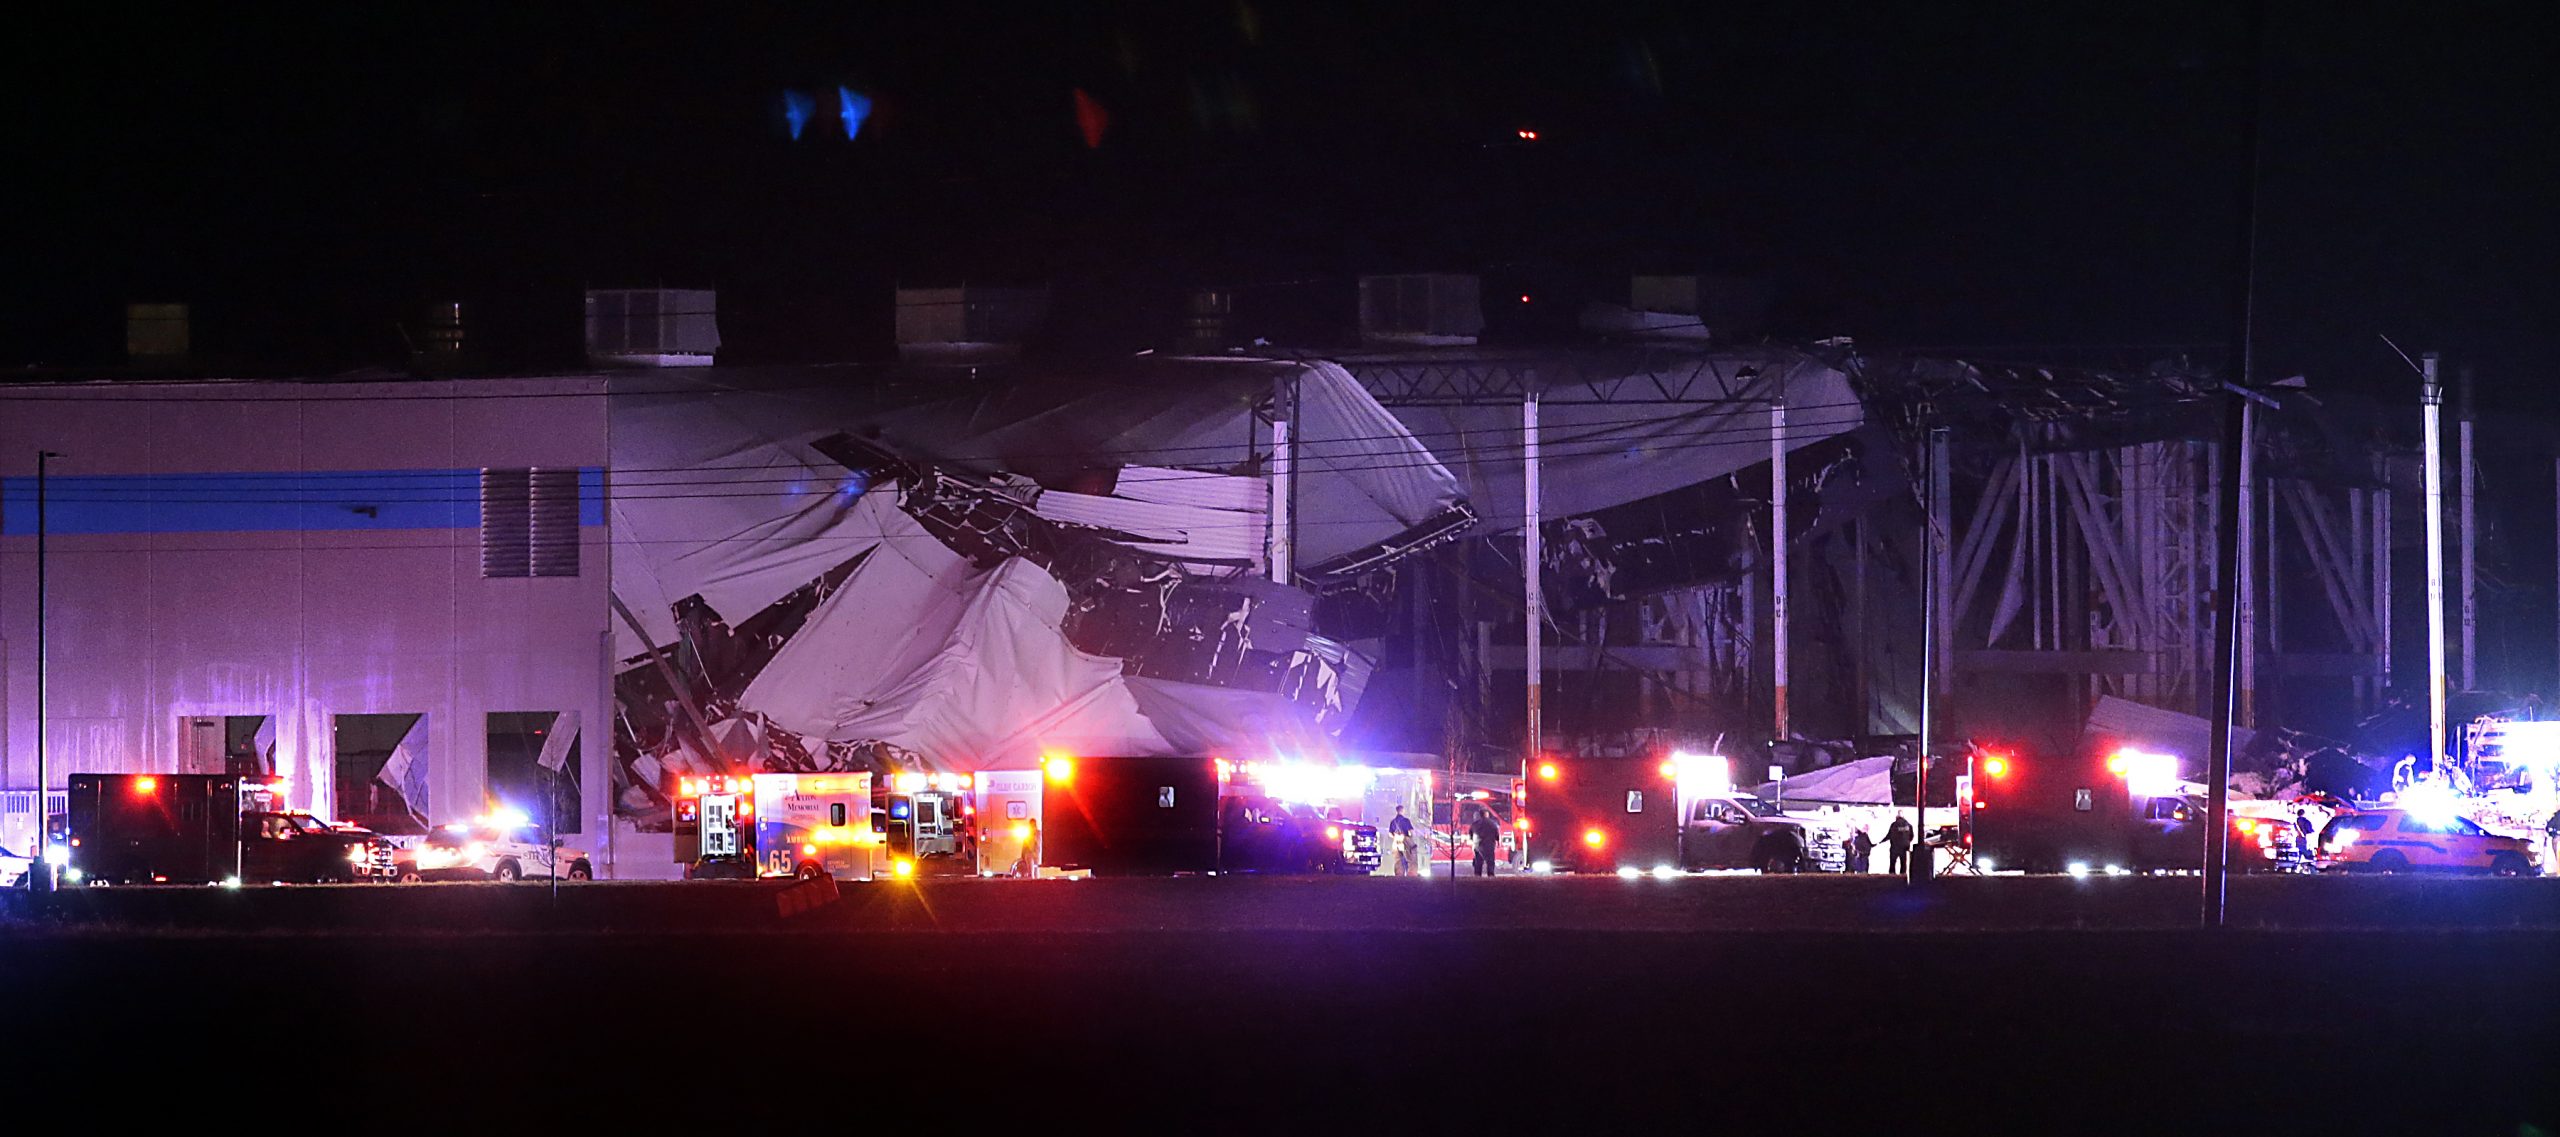 Das Amazon-Vertriebszentrum in Edwardsville im US-Bundesstaat Illinois ist teilweise eingestürzt, nachdem es von einem Tornado getroffen wurde.